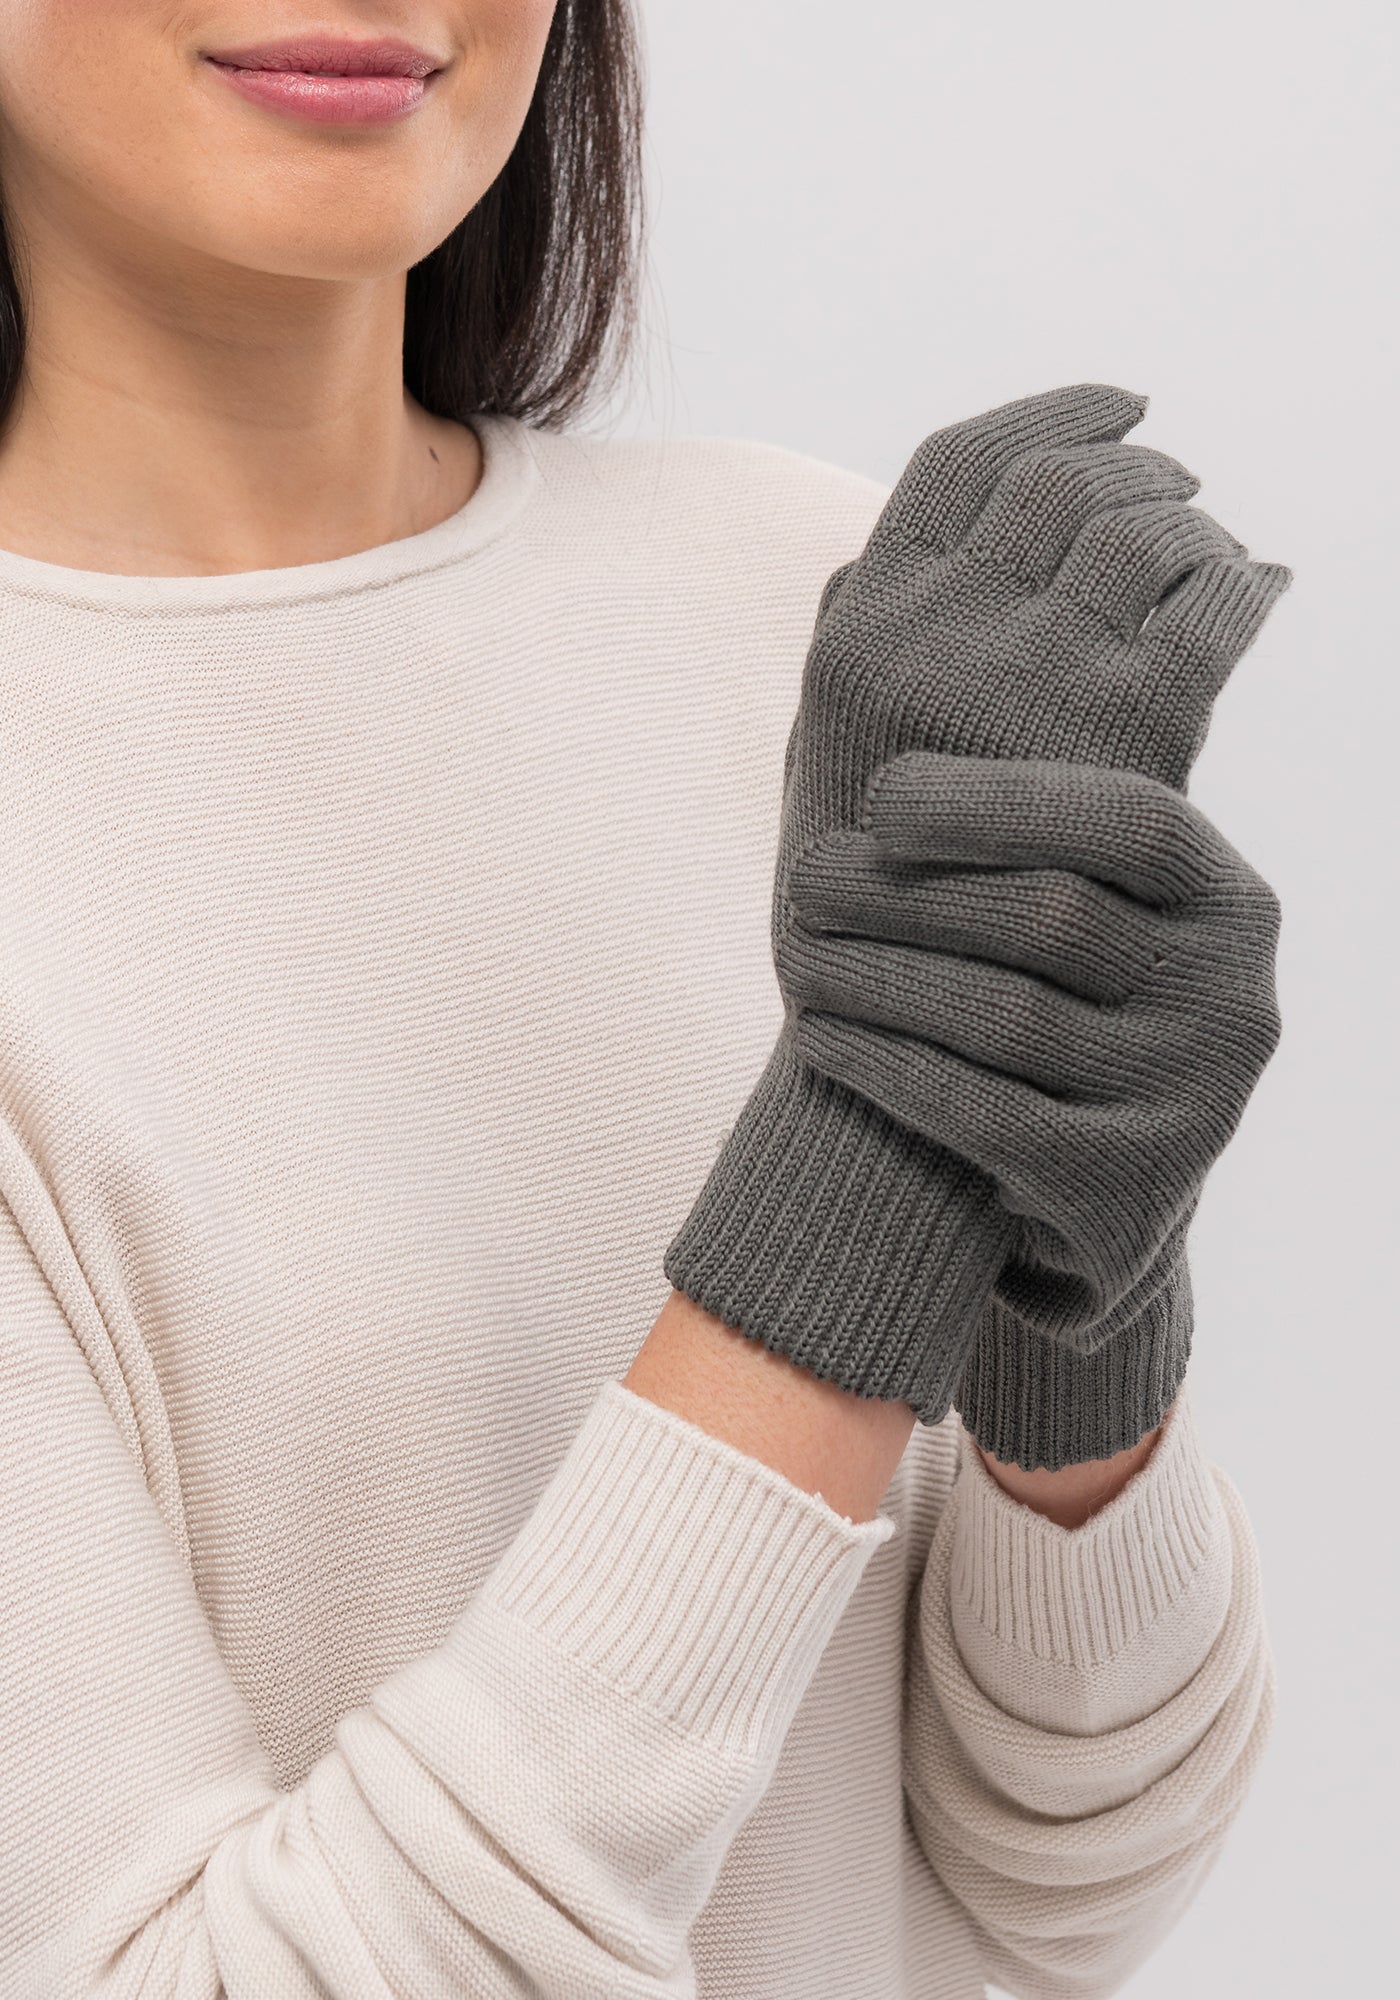 Easy Care Merino Gloves